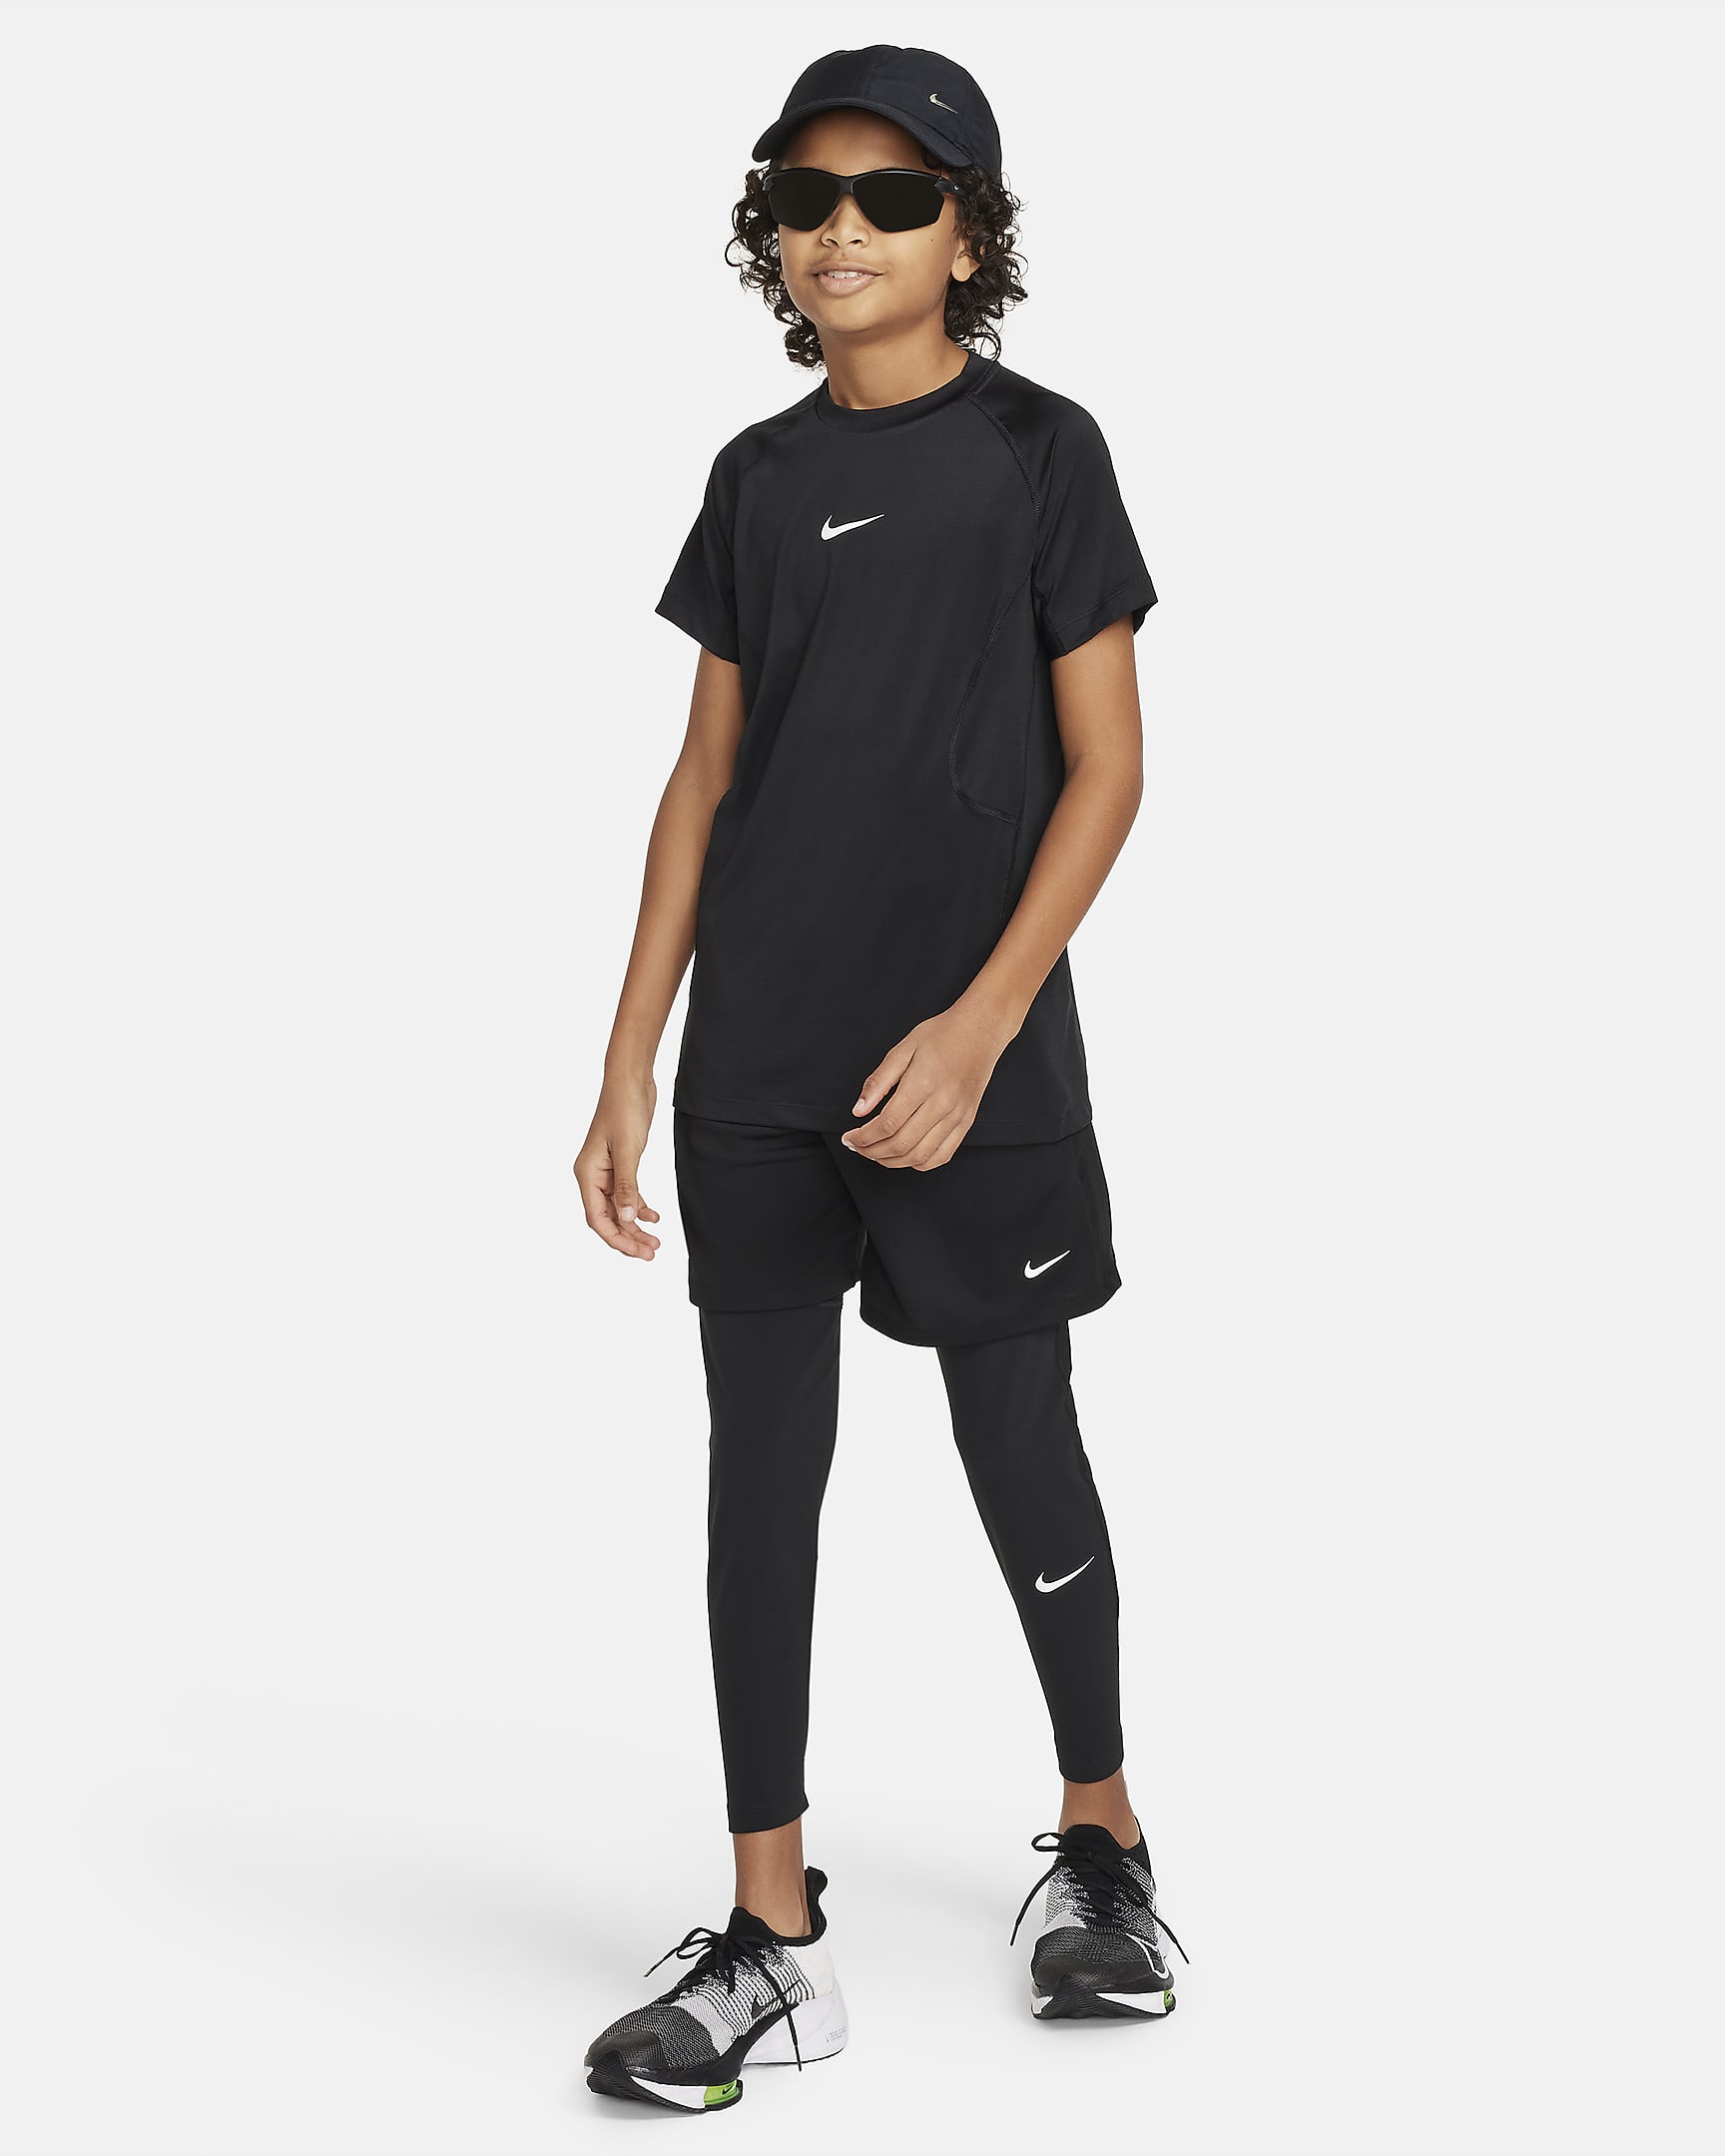 Nike Pro Dri-FIT Older Kids' (Boys') Tights - Black/Black/White